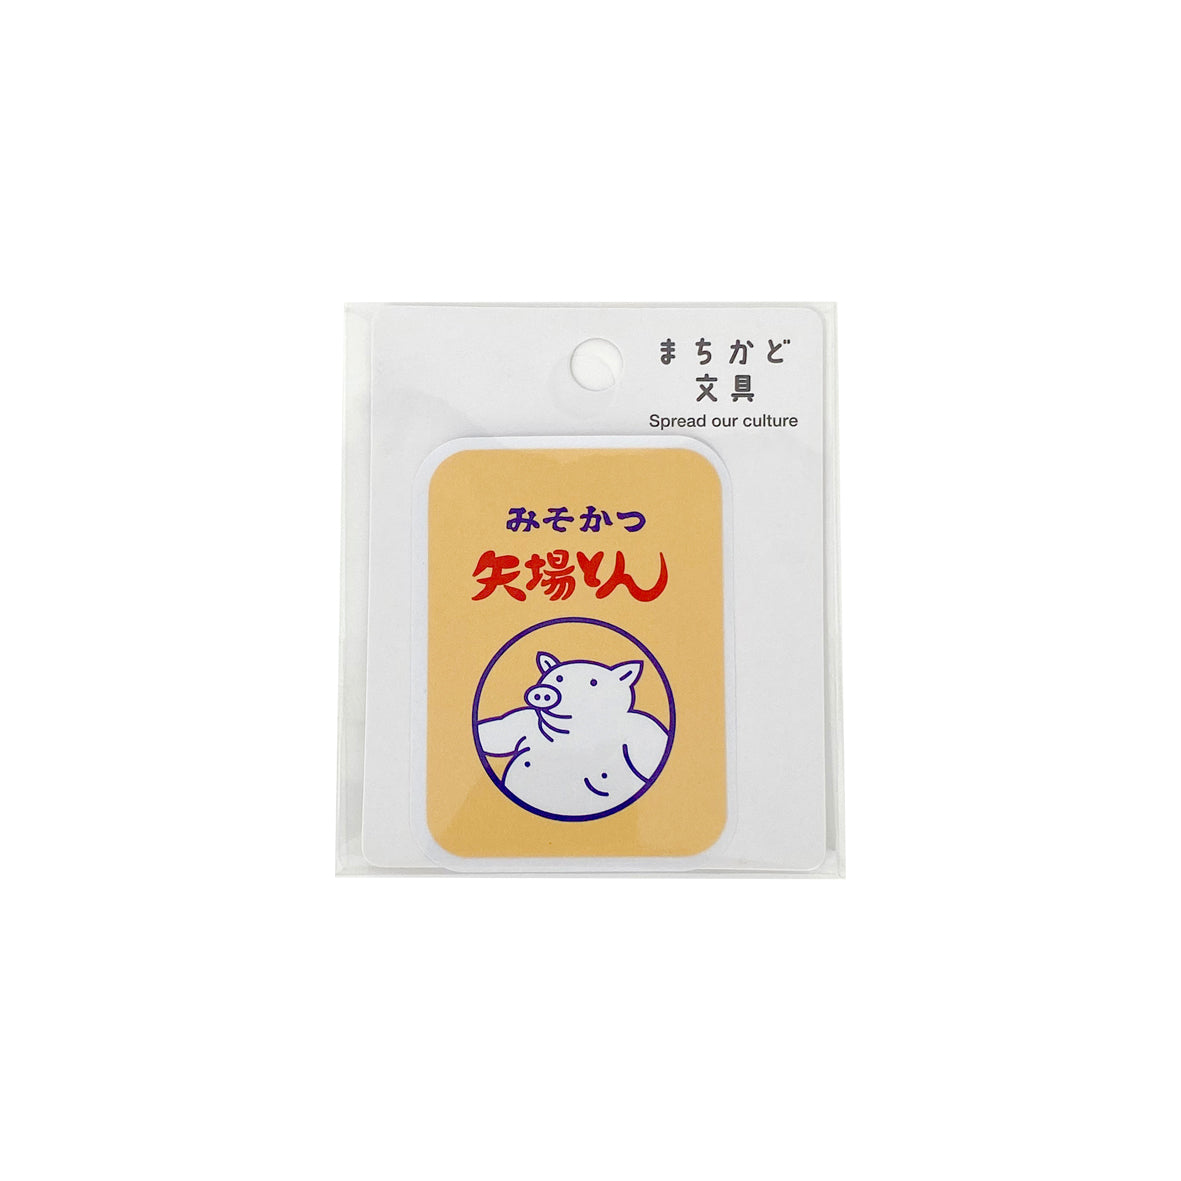 Sticker ng Yabaton Misokatsu Bento